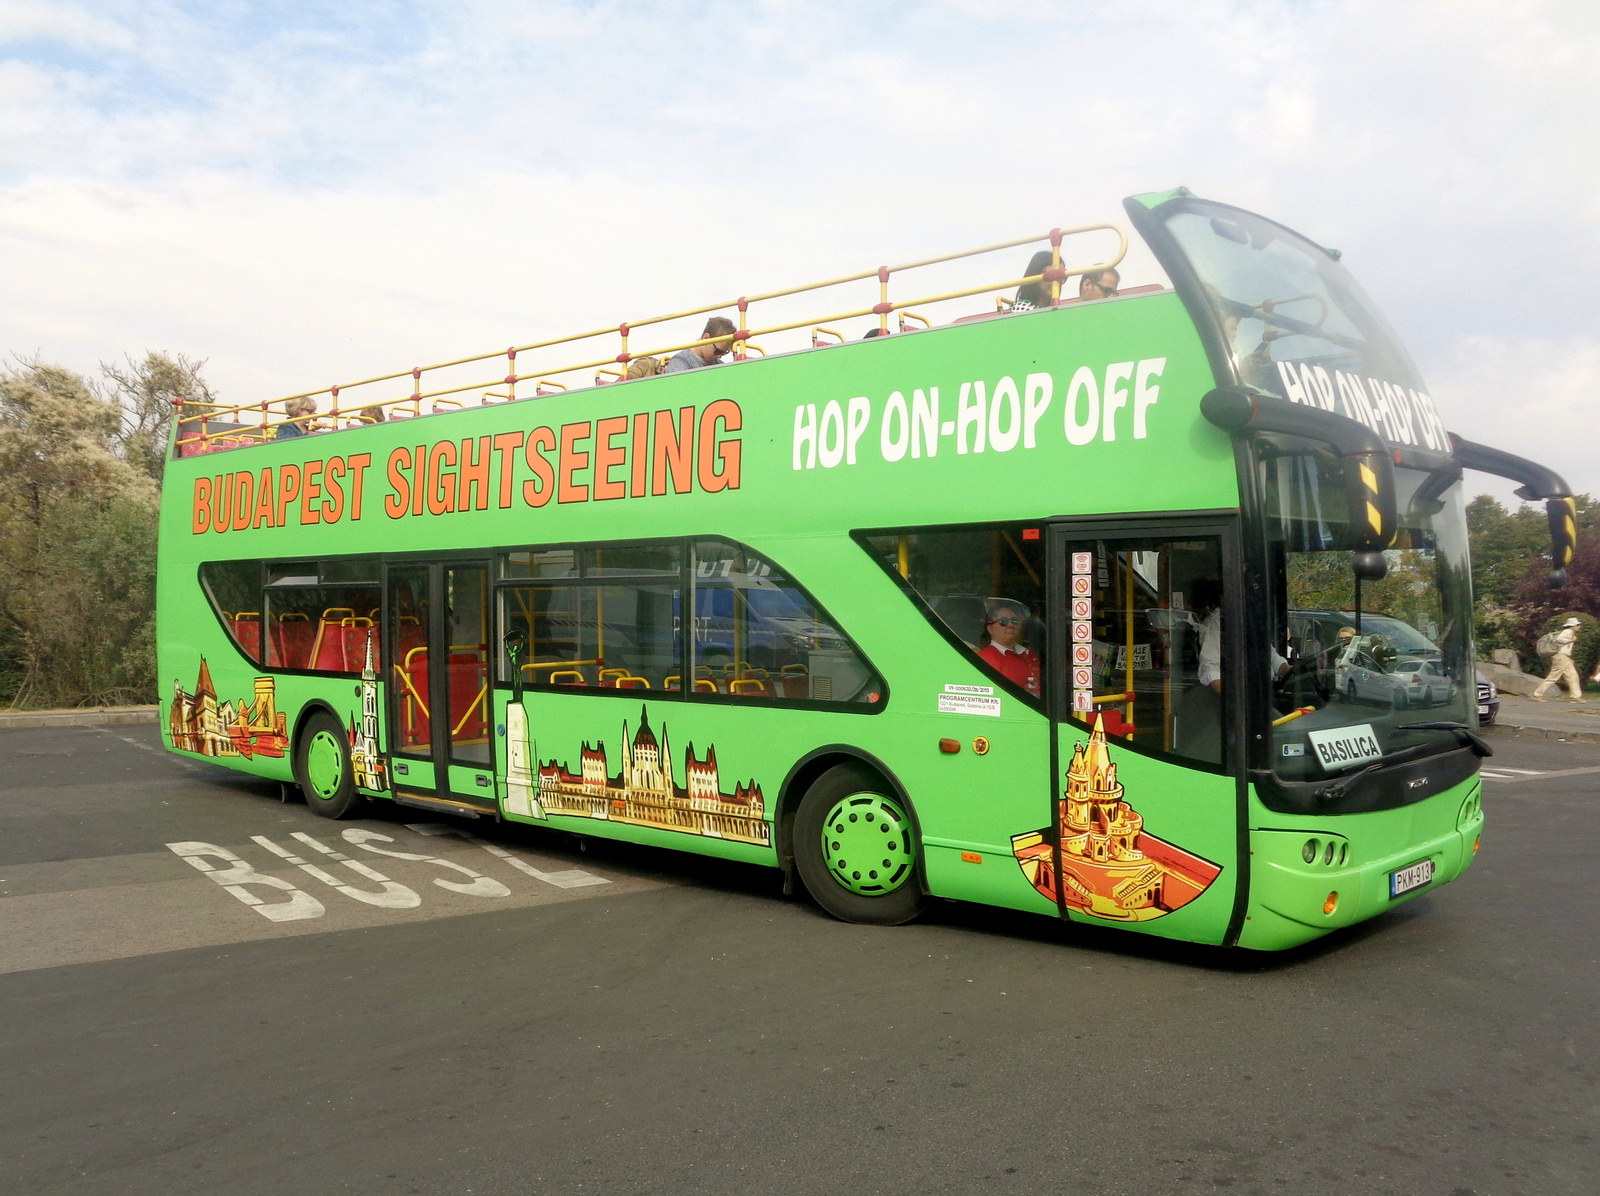 zöld busz